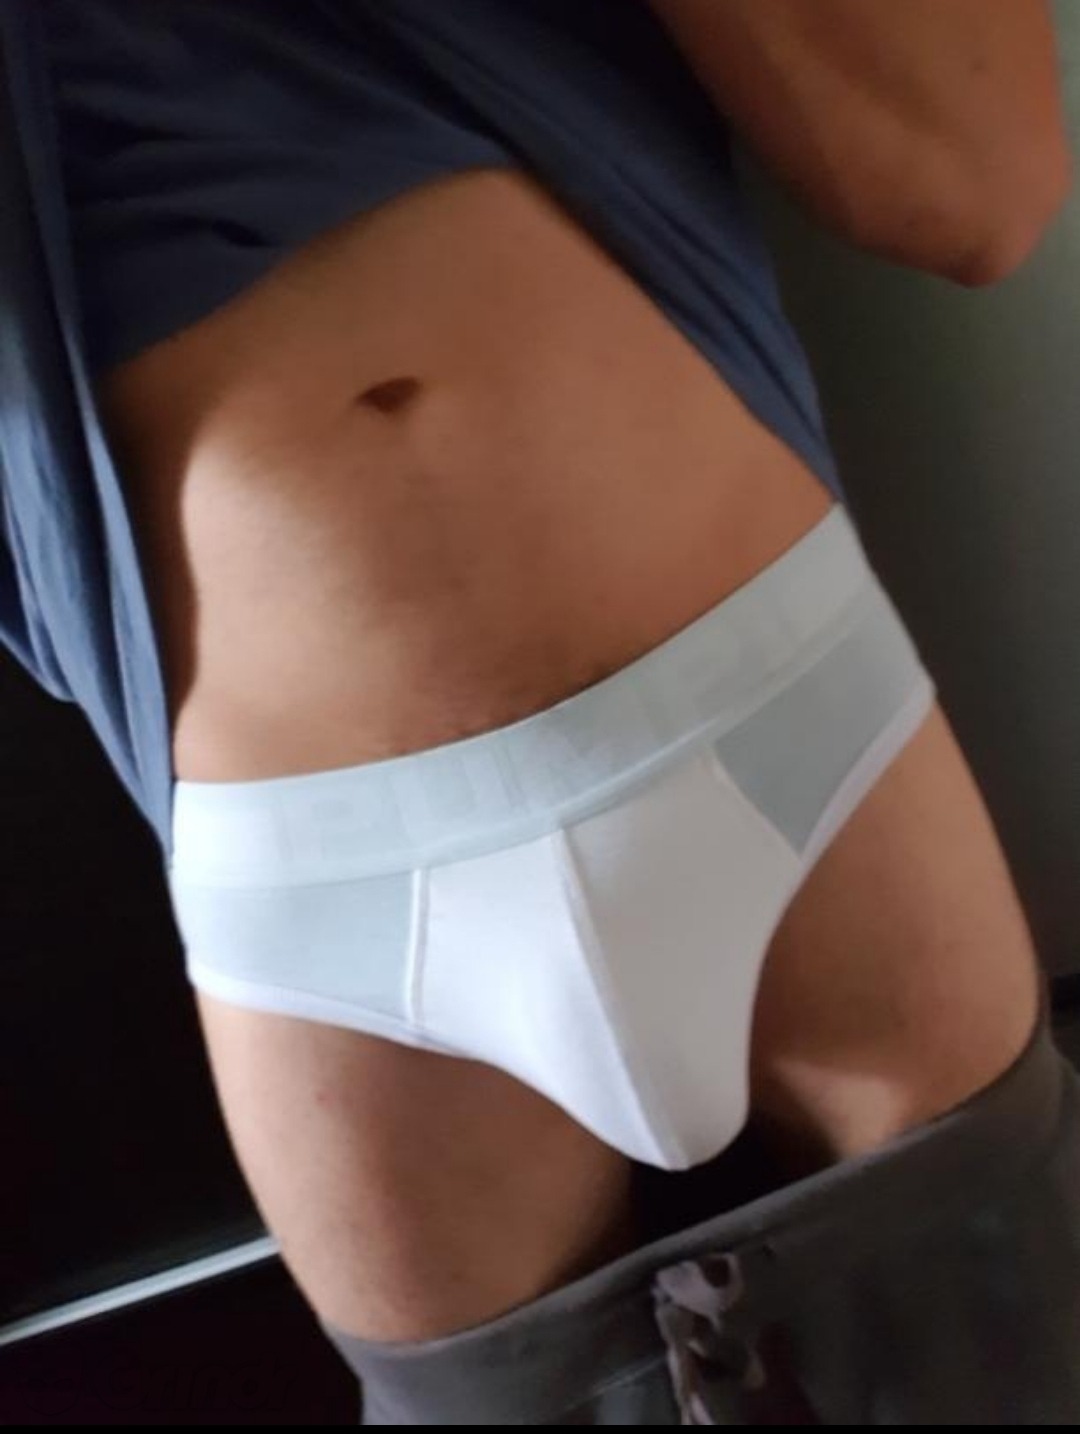 Underwear Bulge Tumblr